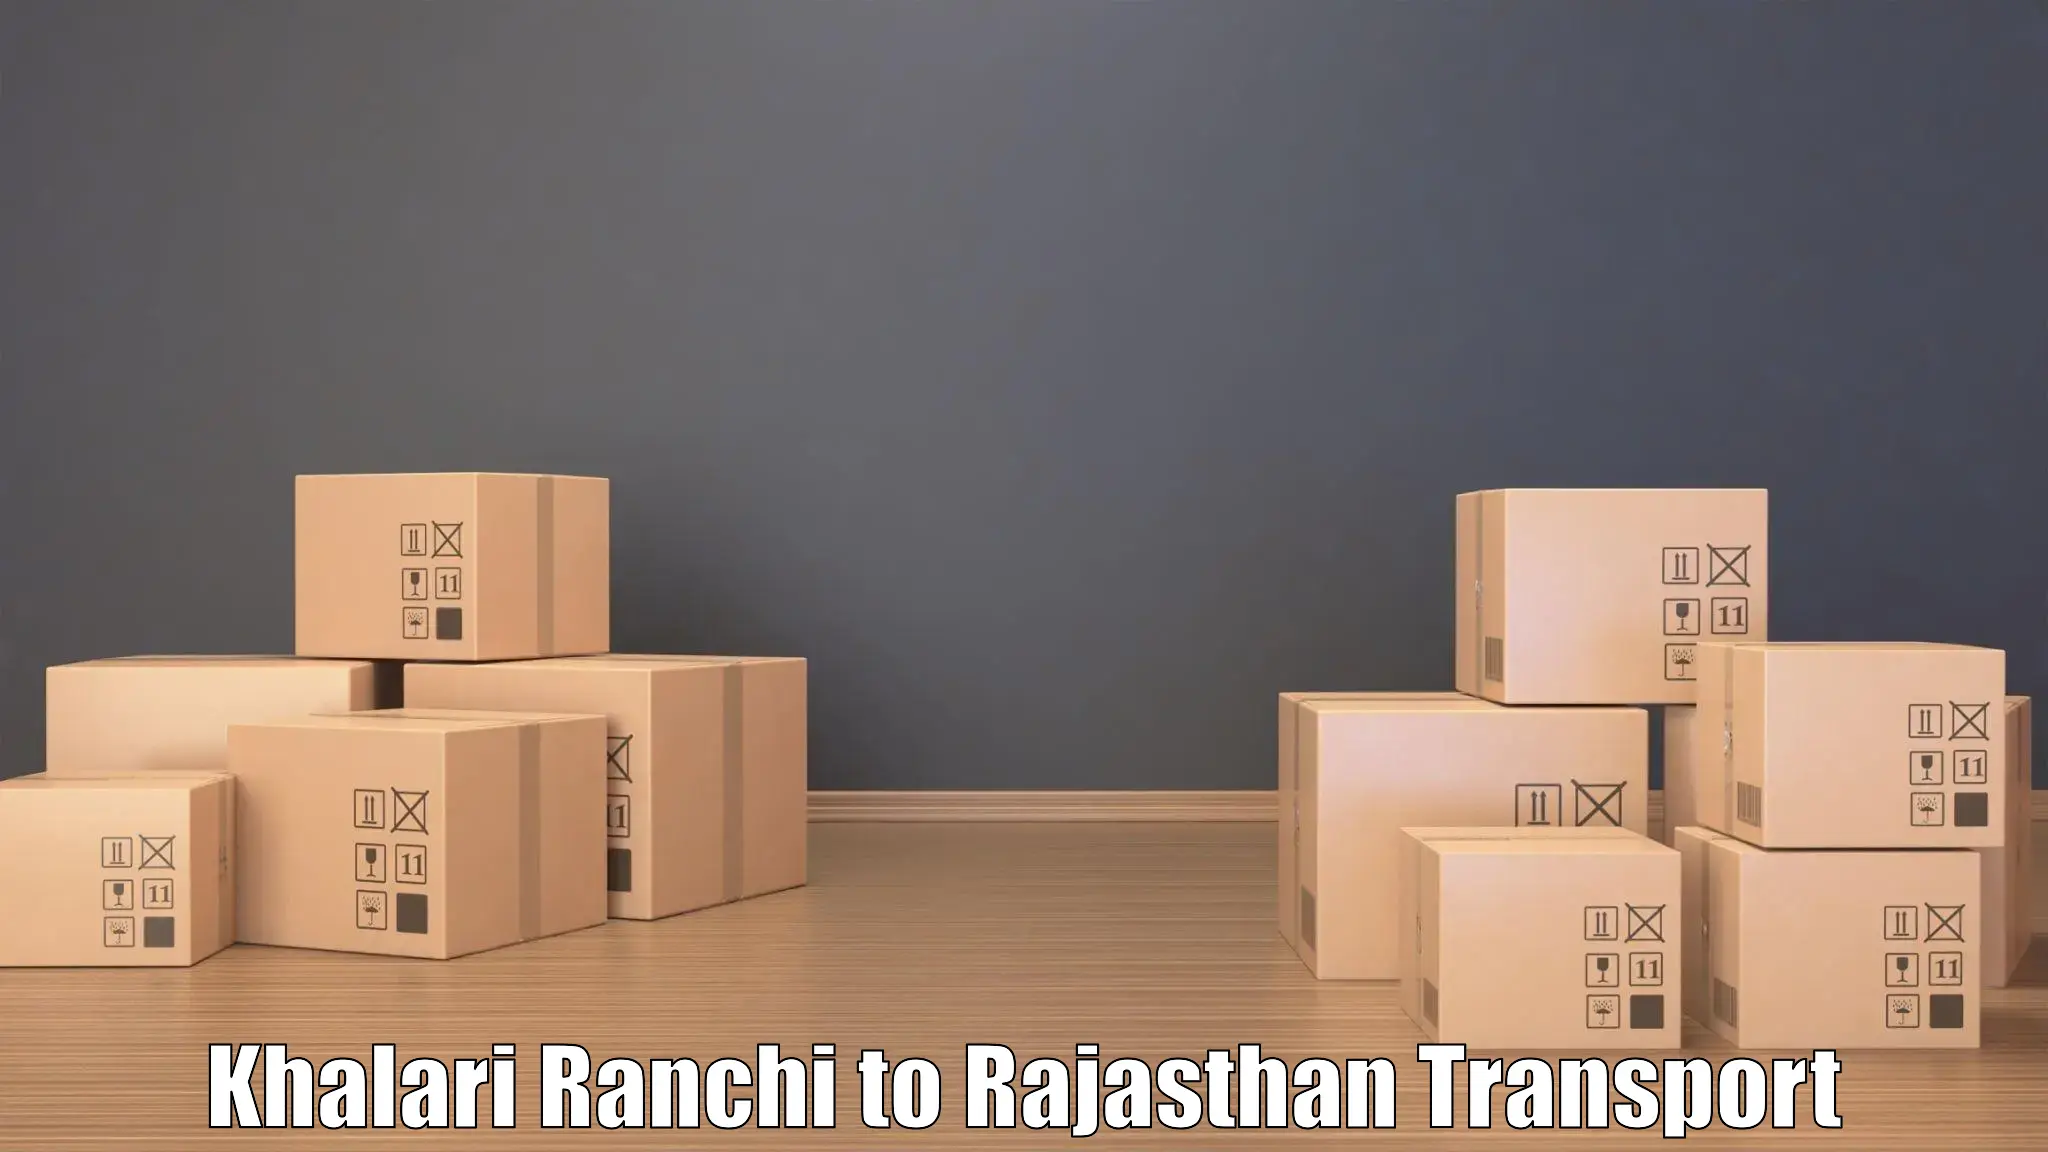 Air freight transport services Khalari Ranchi to Gudha Gorji